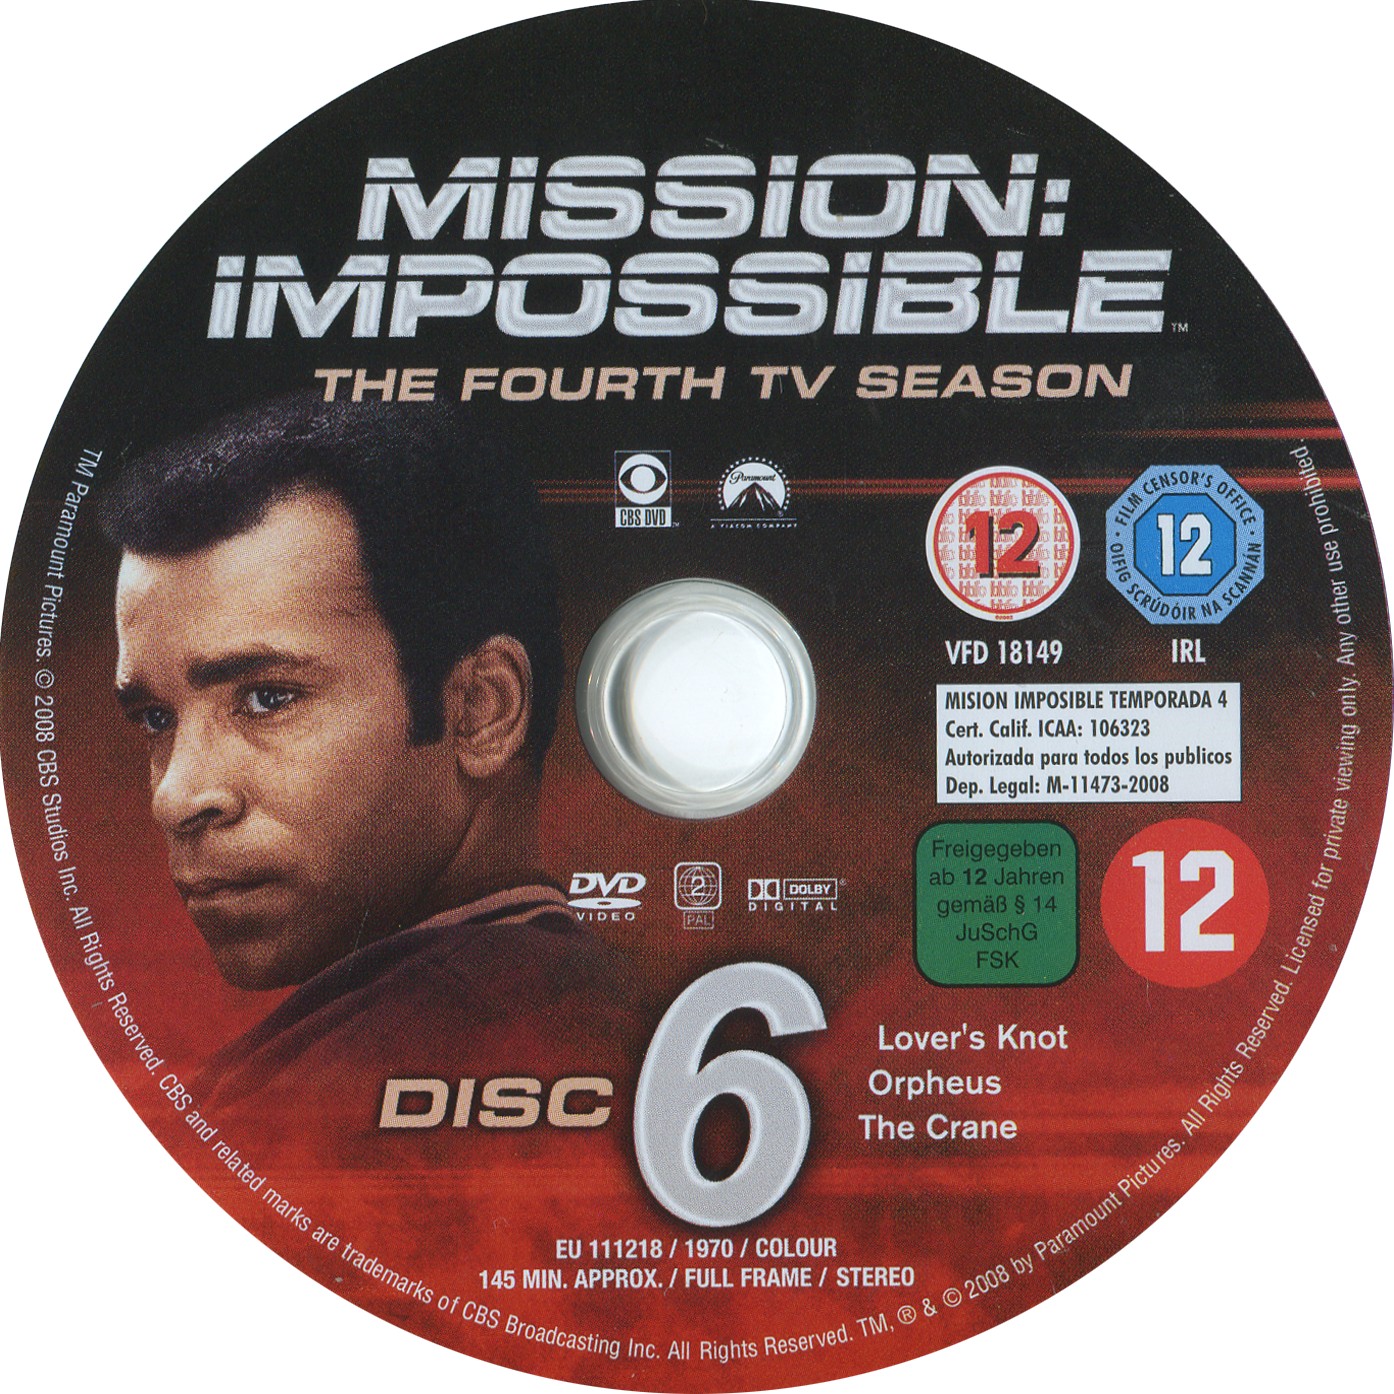 Mission impossible Saison 4 DISC 6